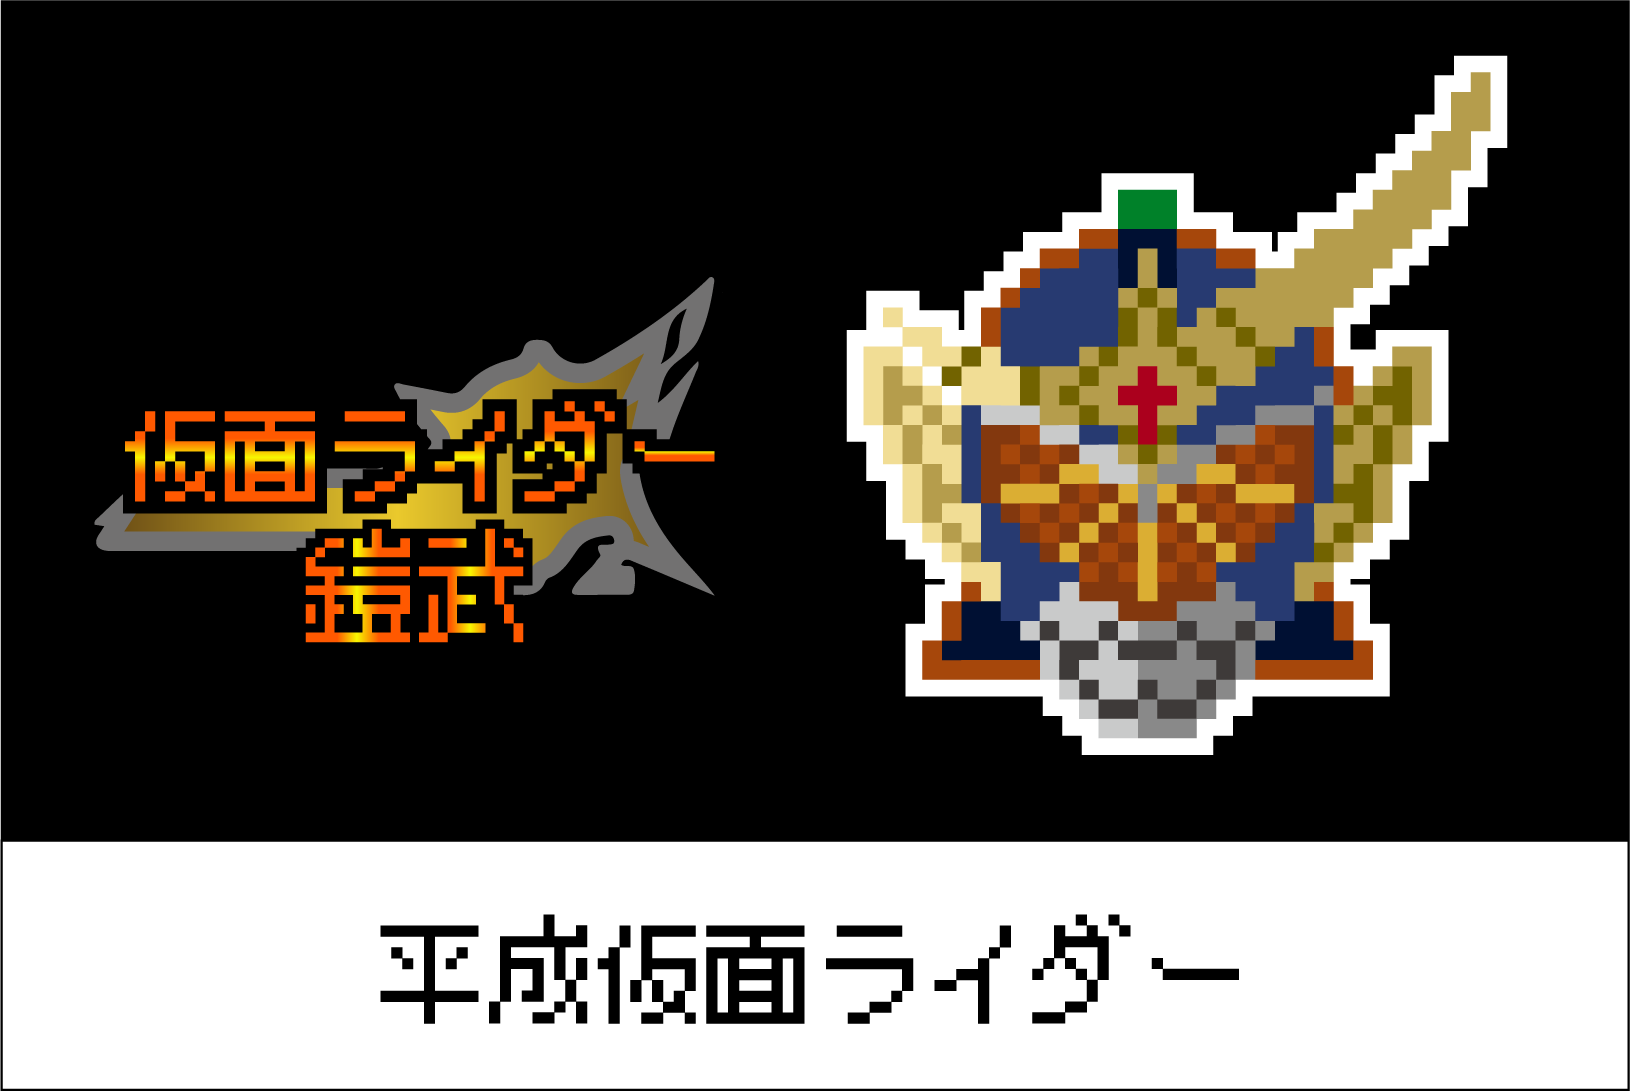 【平成仮面ライダーシリーズ】仮面ライダー鎧武のアイロンビーズ図案